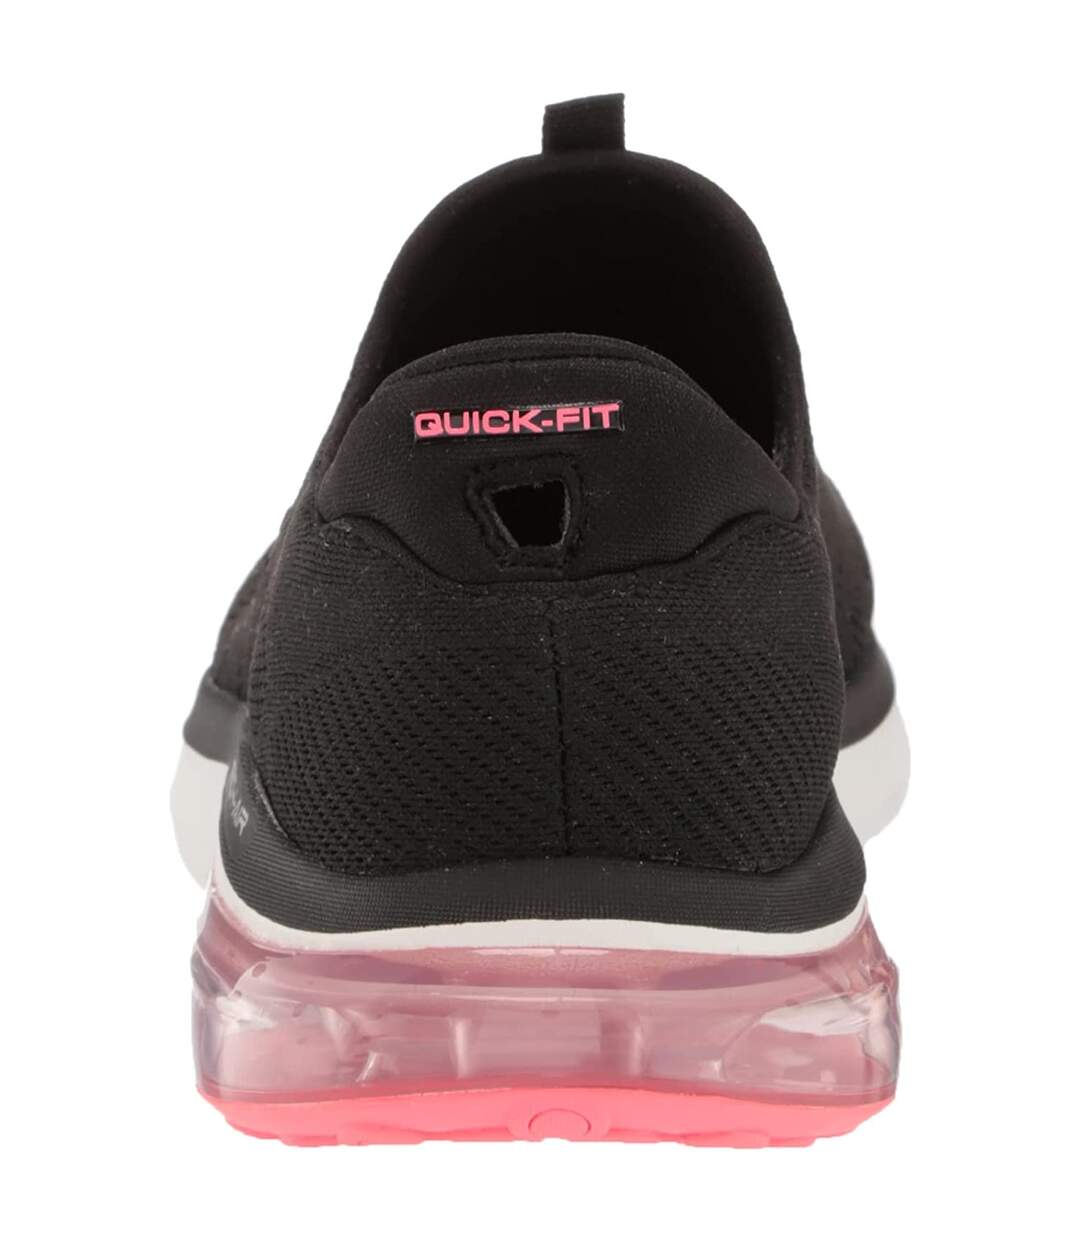 Skechers Womens/Ladies Go Walk Air 2.0 Shoes (Black/Multicolored) - UTFS8320